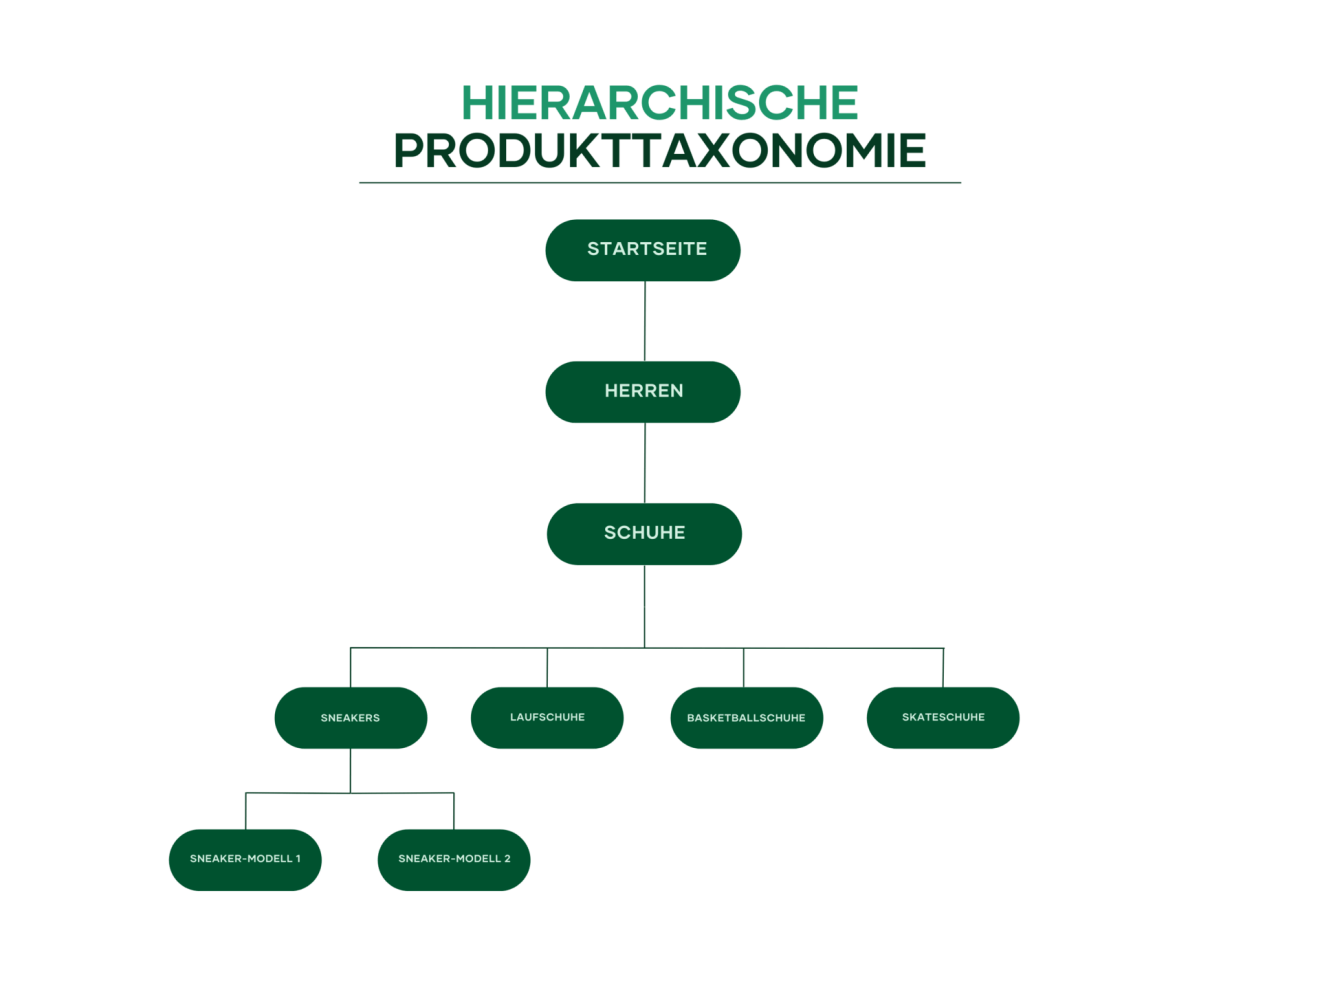 Eine hierarchische Produktkategorisierung (Produkttaxonomie) hilft dir dabei, deine Produkte sinnvoll zu strukturieren, hier am Beispiel von Sneakers dargestellt.